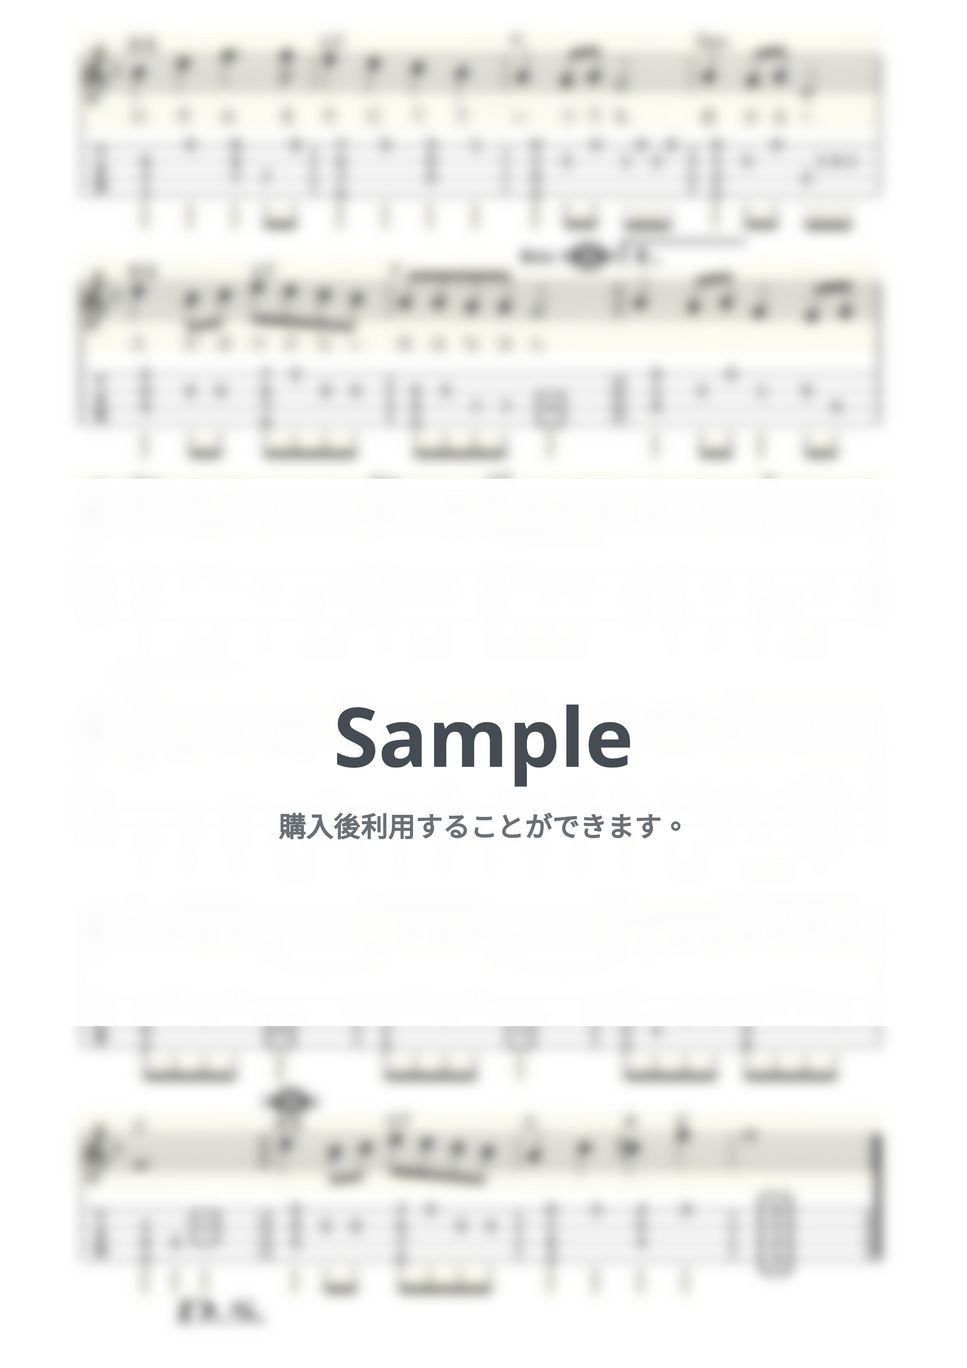 倍賞 千恵子 - おはなはん (ｳｸﾚﾚｿﾛ/Low-G/中級) by ukulelepapa